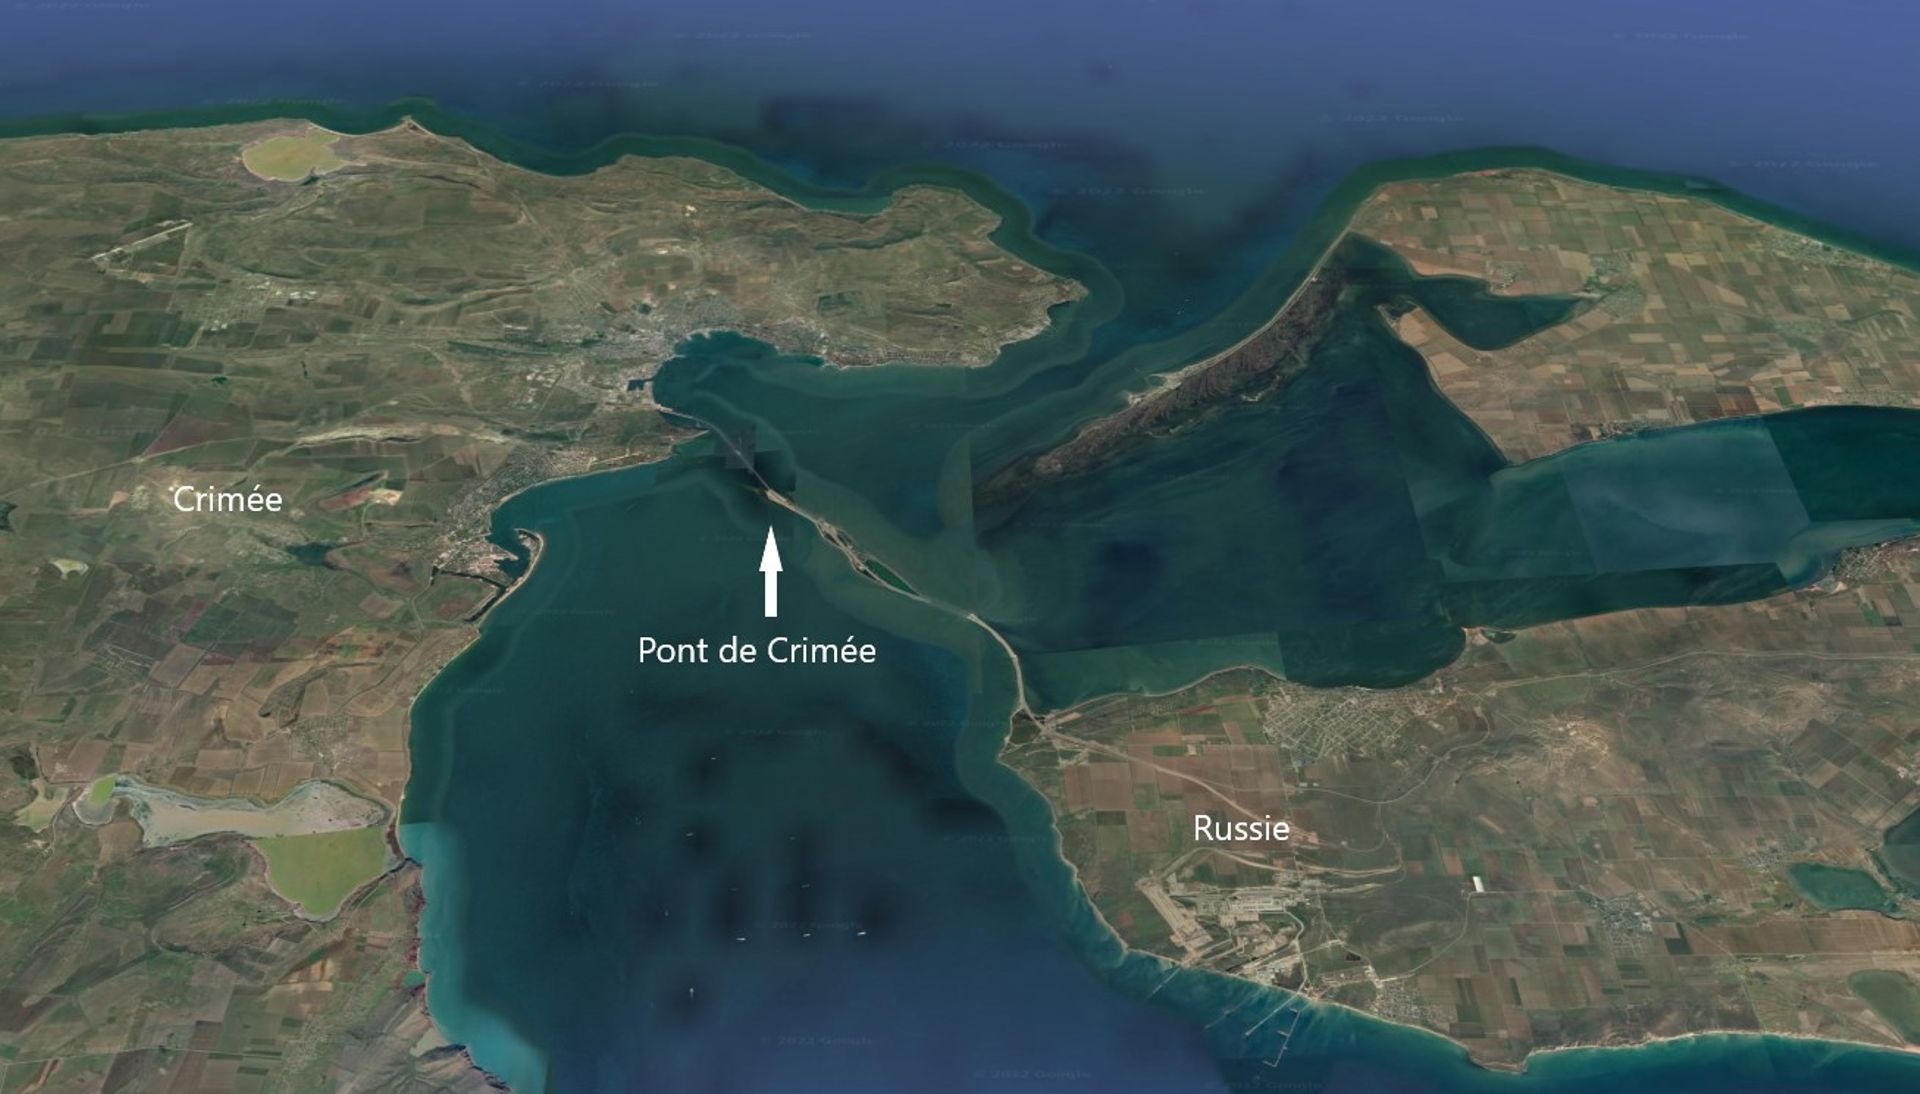 Le "pont de Crimée" reliant la péninsule de Crimée, annexée depuis 2014, à la Russie continentale.